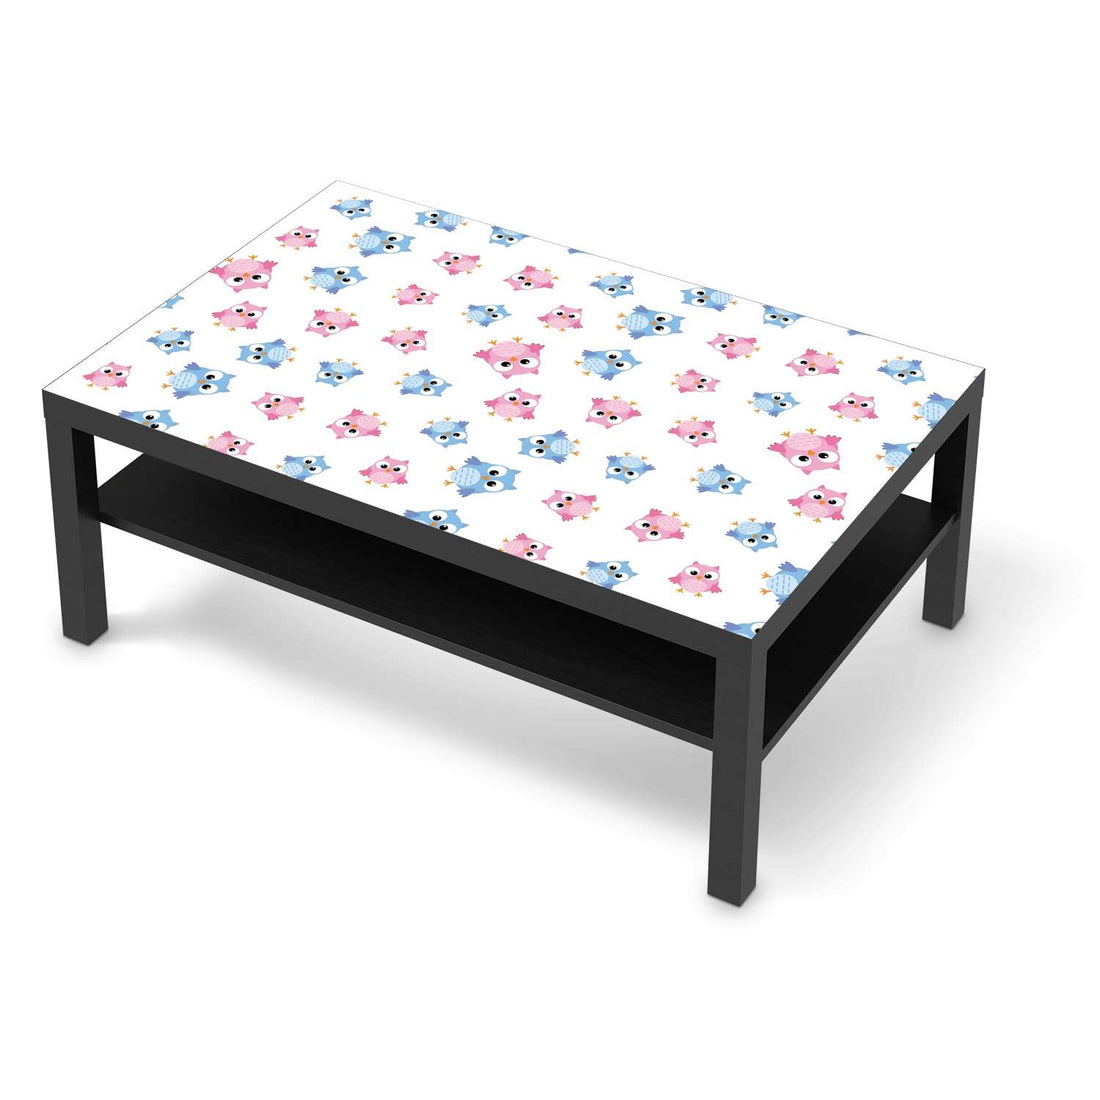 Klebefolie Eulenparty - IKEA Lack Tisch 118x78 cm - schwarz